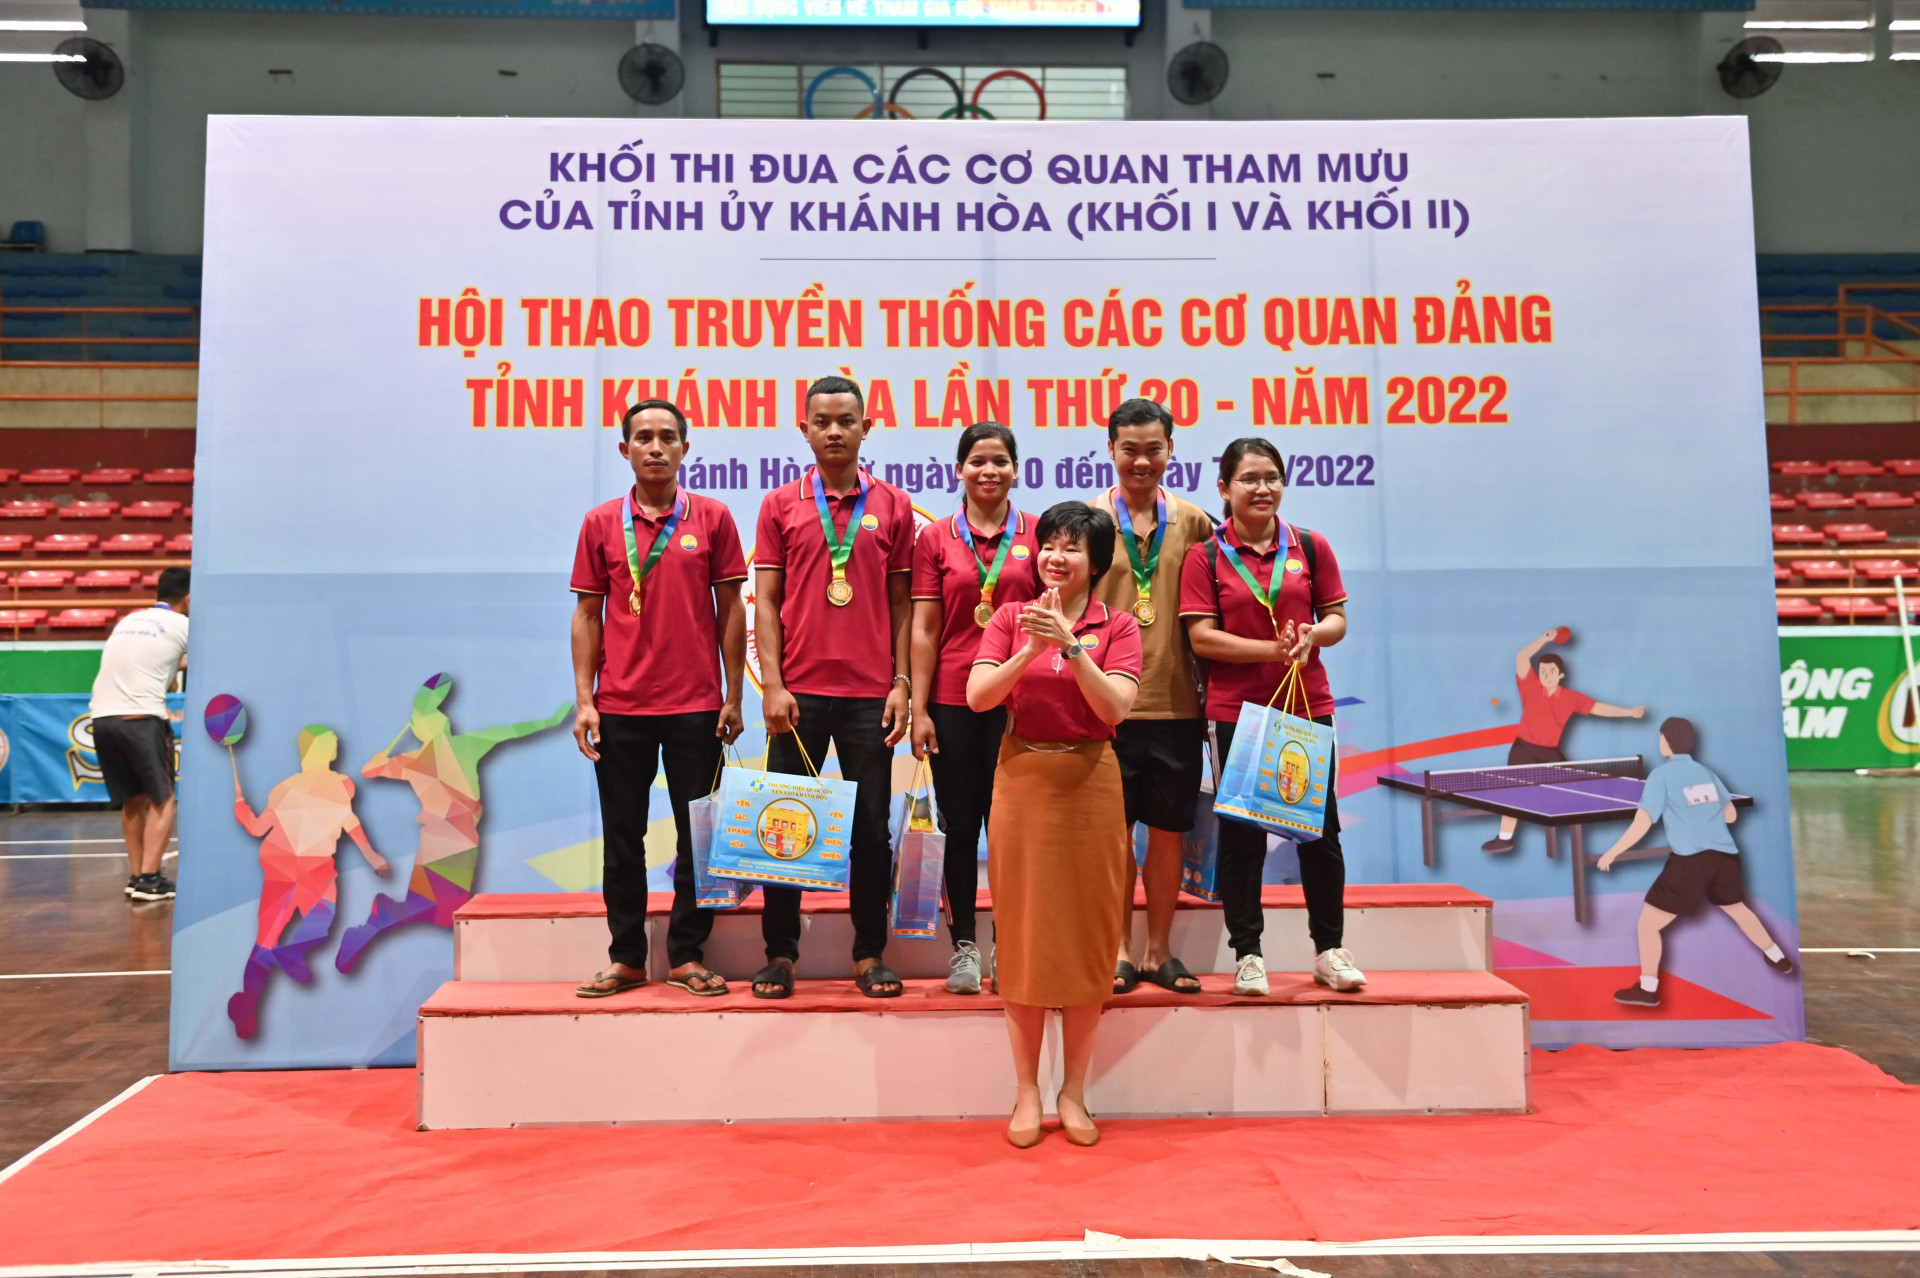 Huyện uỷ Khánh Sơn đạt nhất nội dung thi nhảy bao bố tiếp sức